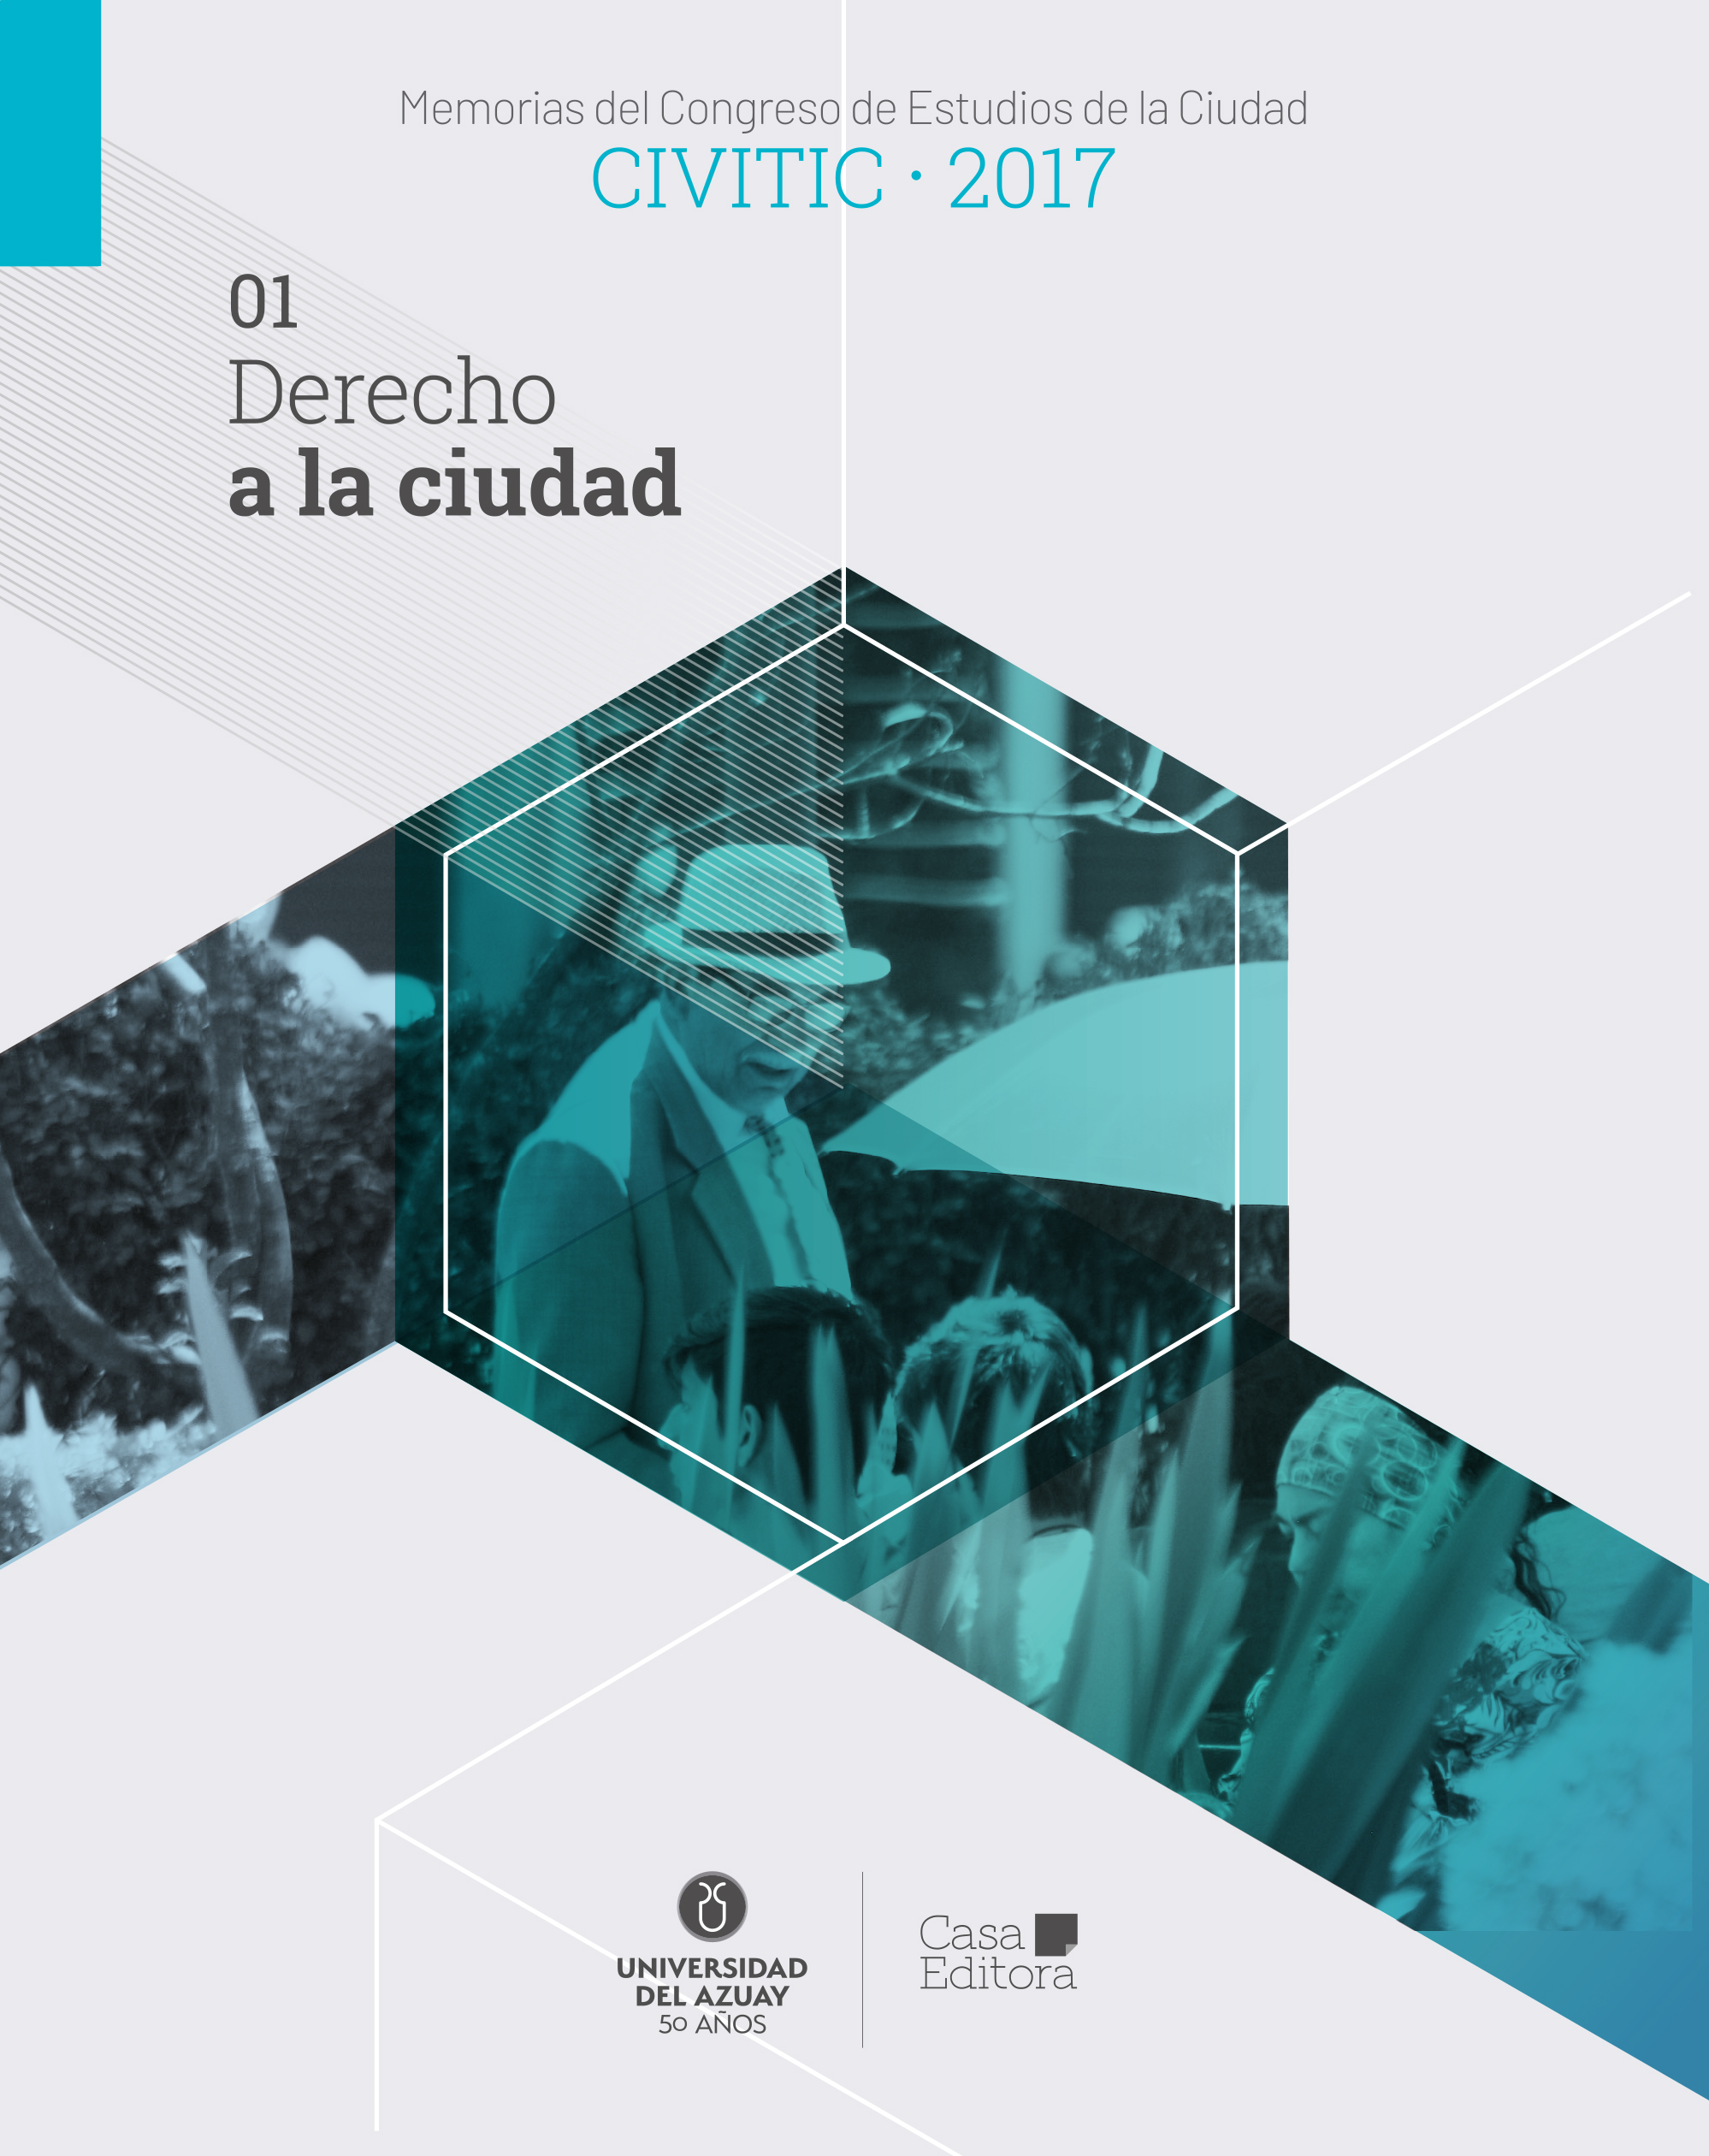 					Visualizza Memorias del Congreso de Estudios de la Ciudad CIVITIC 2017 -  Derecho a la ciudad
				